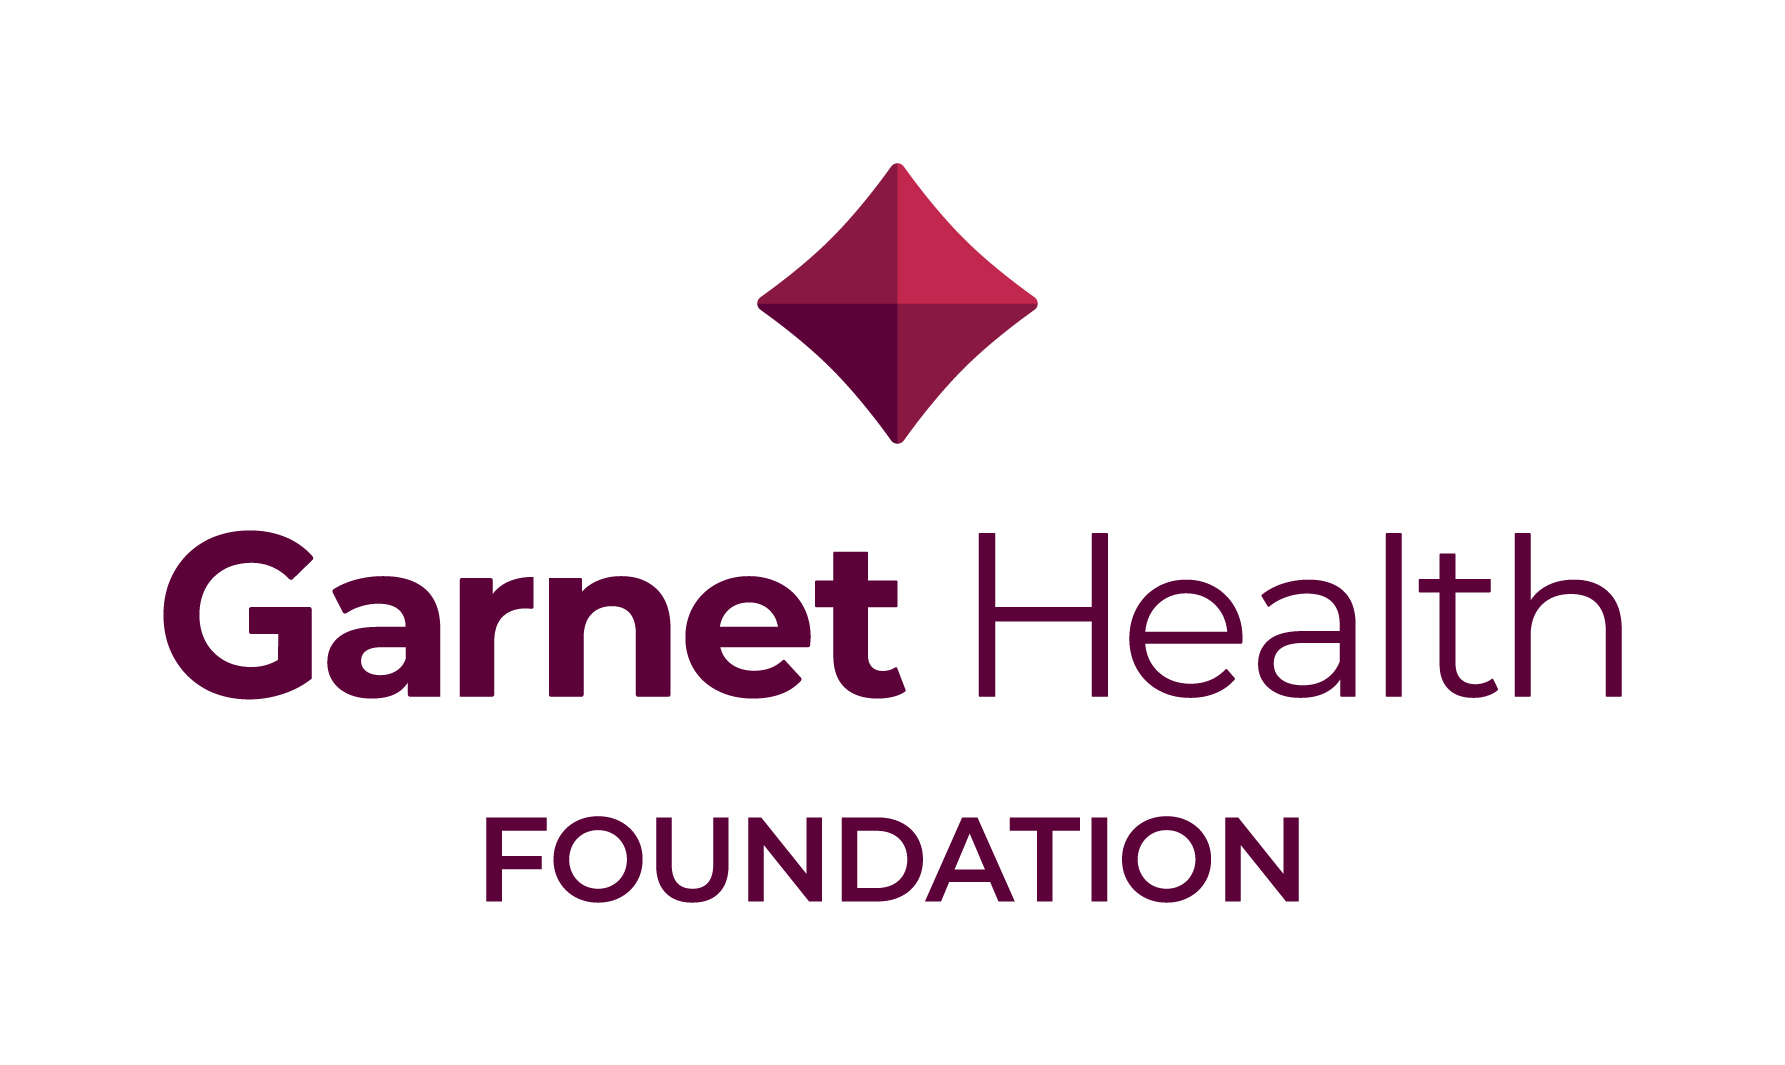 Garnet Health Foundation logo